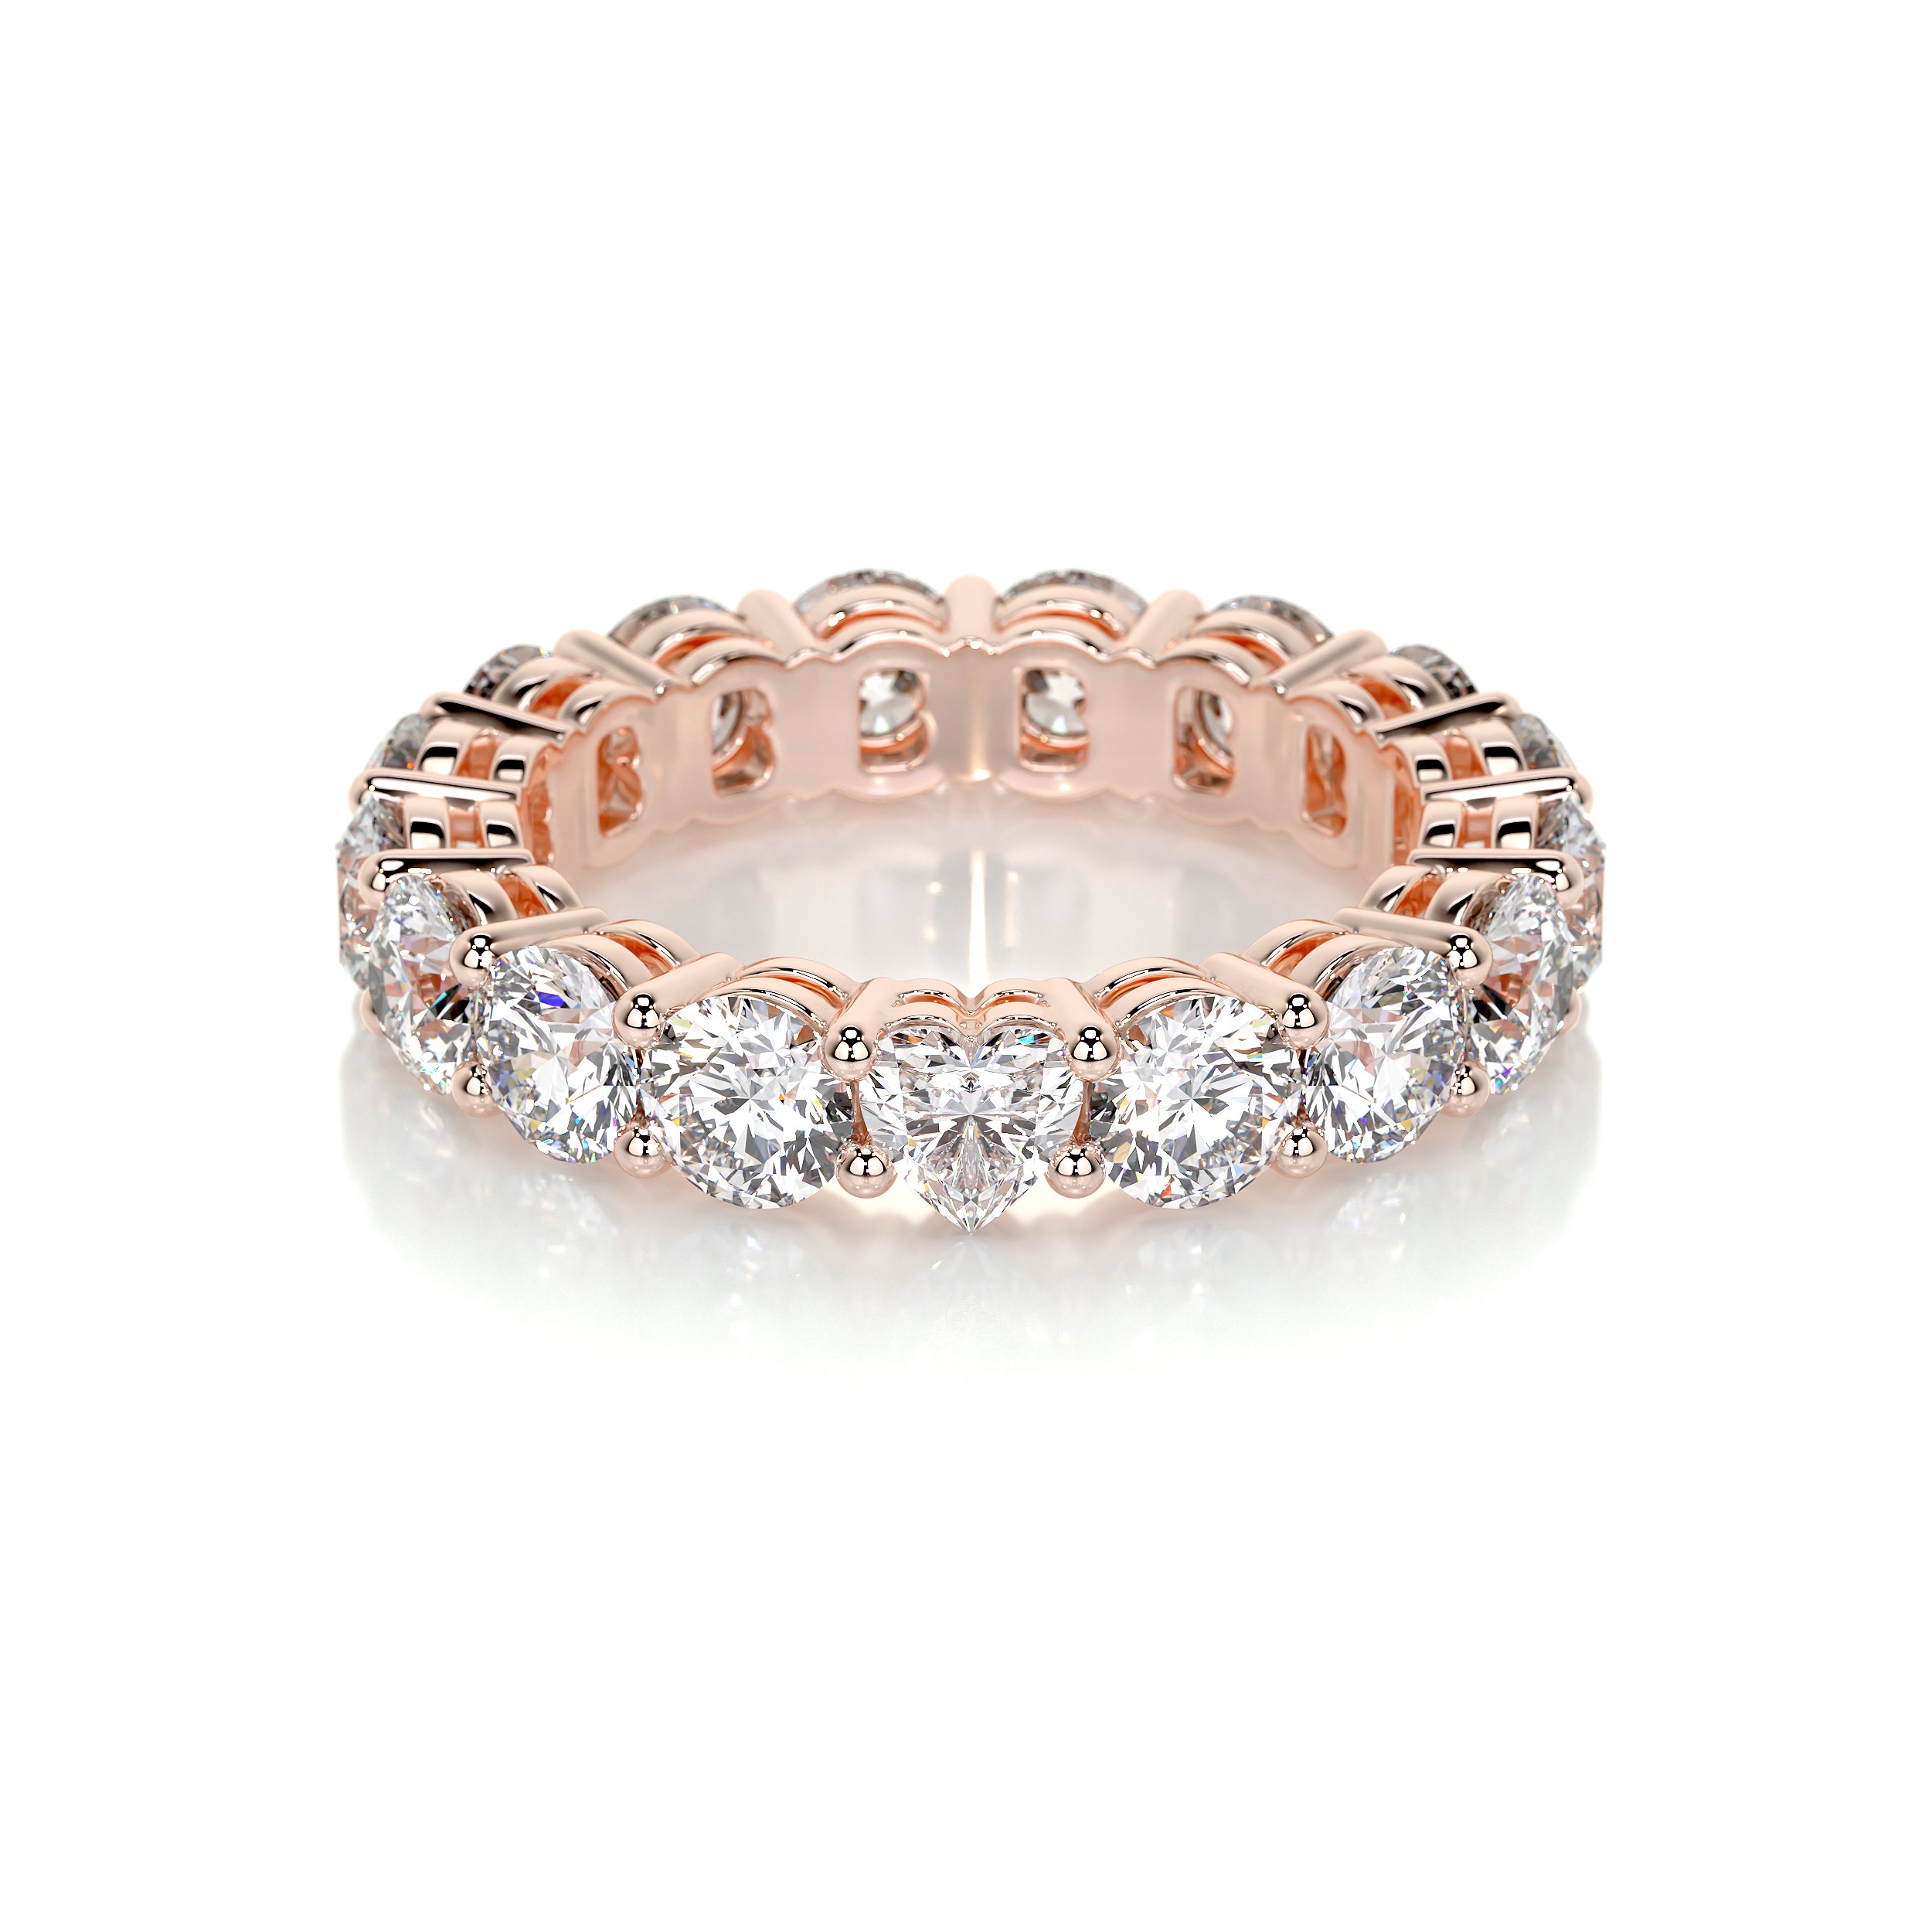 Anne Lab Grown Diamond Wedding Ring   (4 Carat) -14K Rose Gold